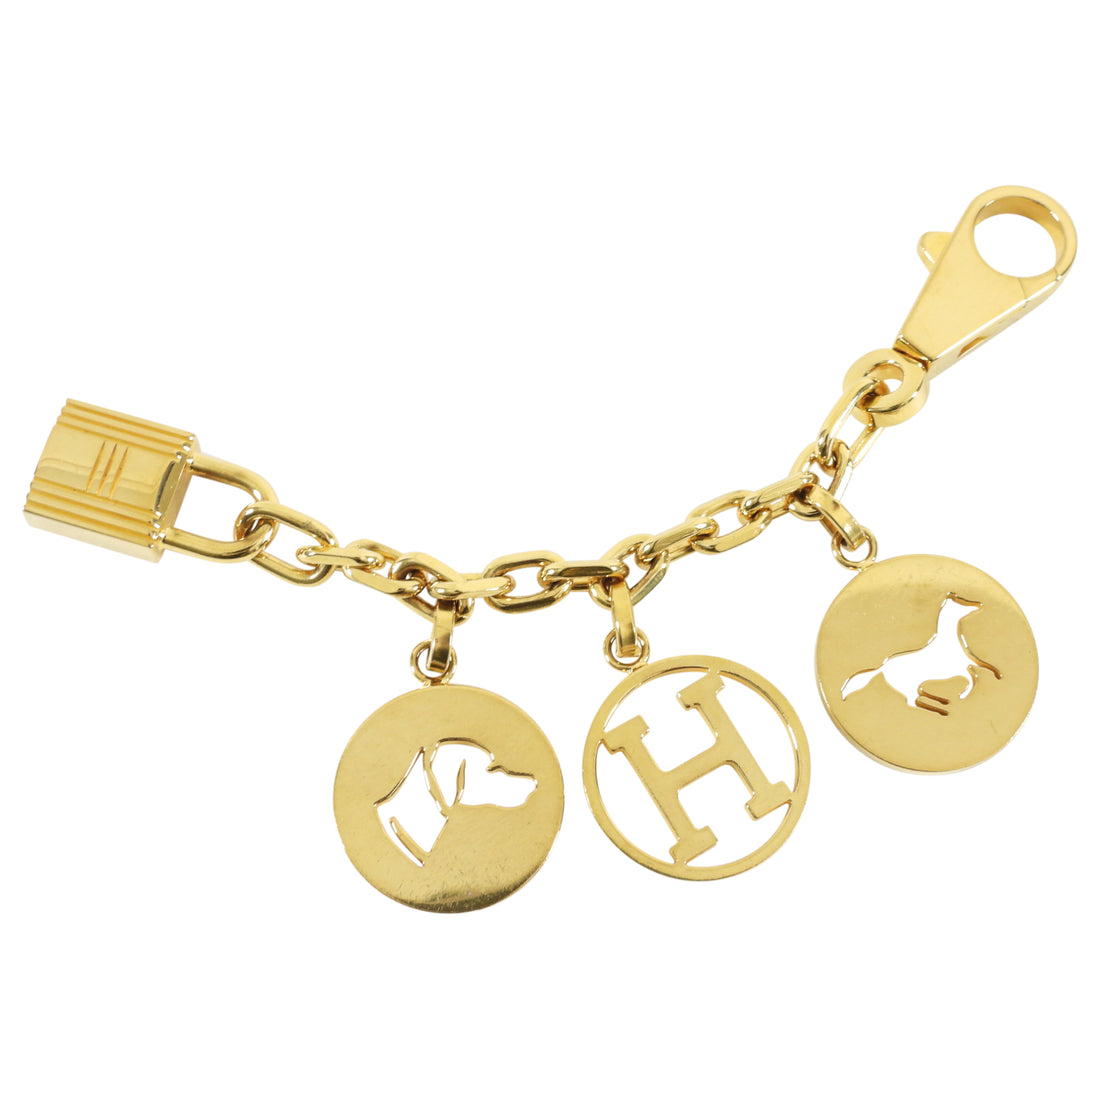 Replica Hermes Gold Breloque Bag Charm